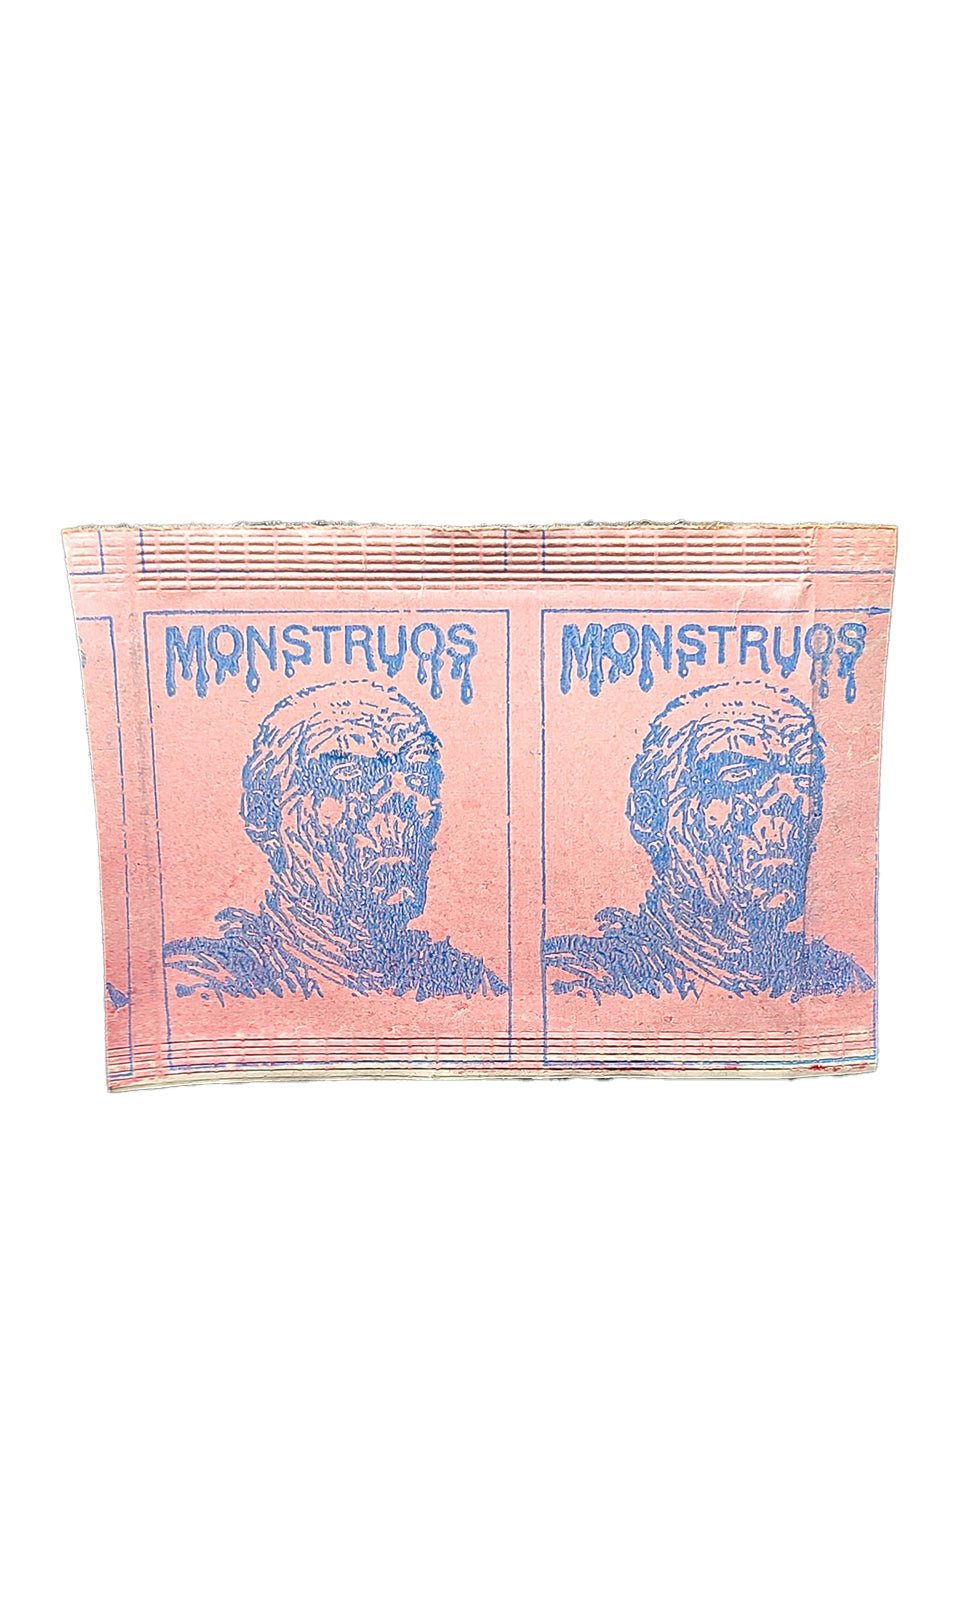 1980 Monstruos (Monster) Reyauca Venezuela 1-Panel Sticker Pack Monster Sealed Pack - Hobby Gems